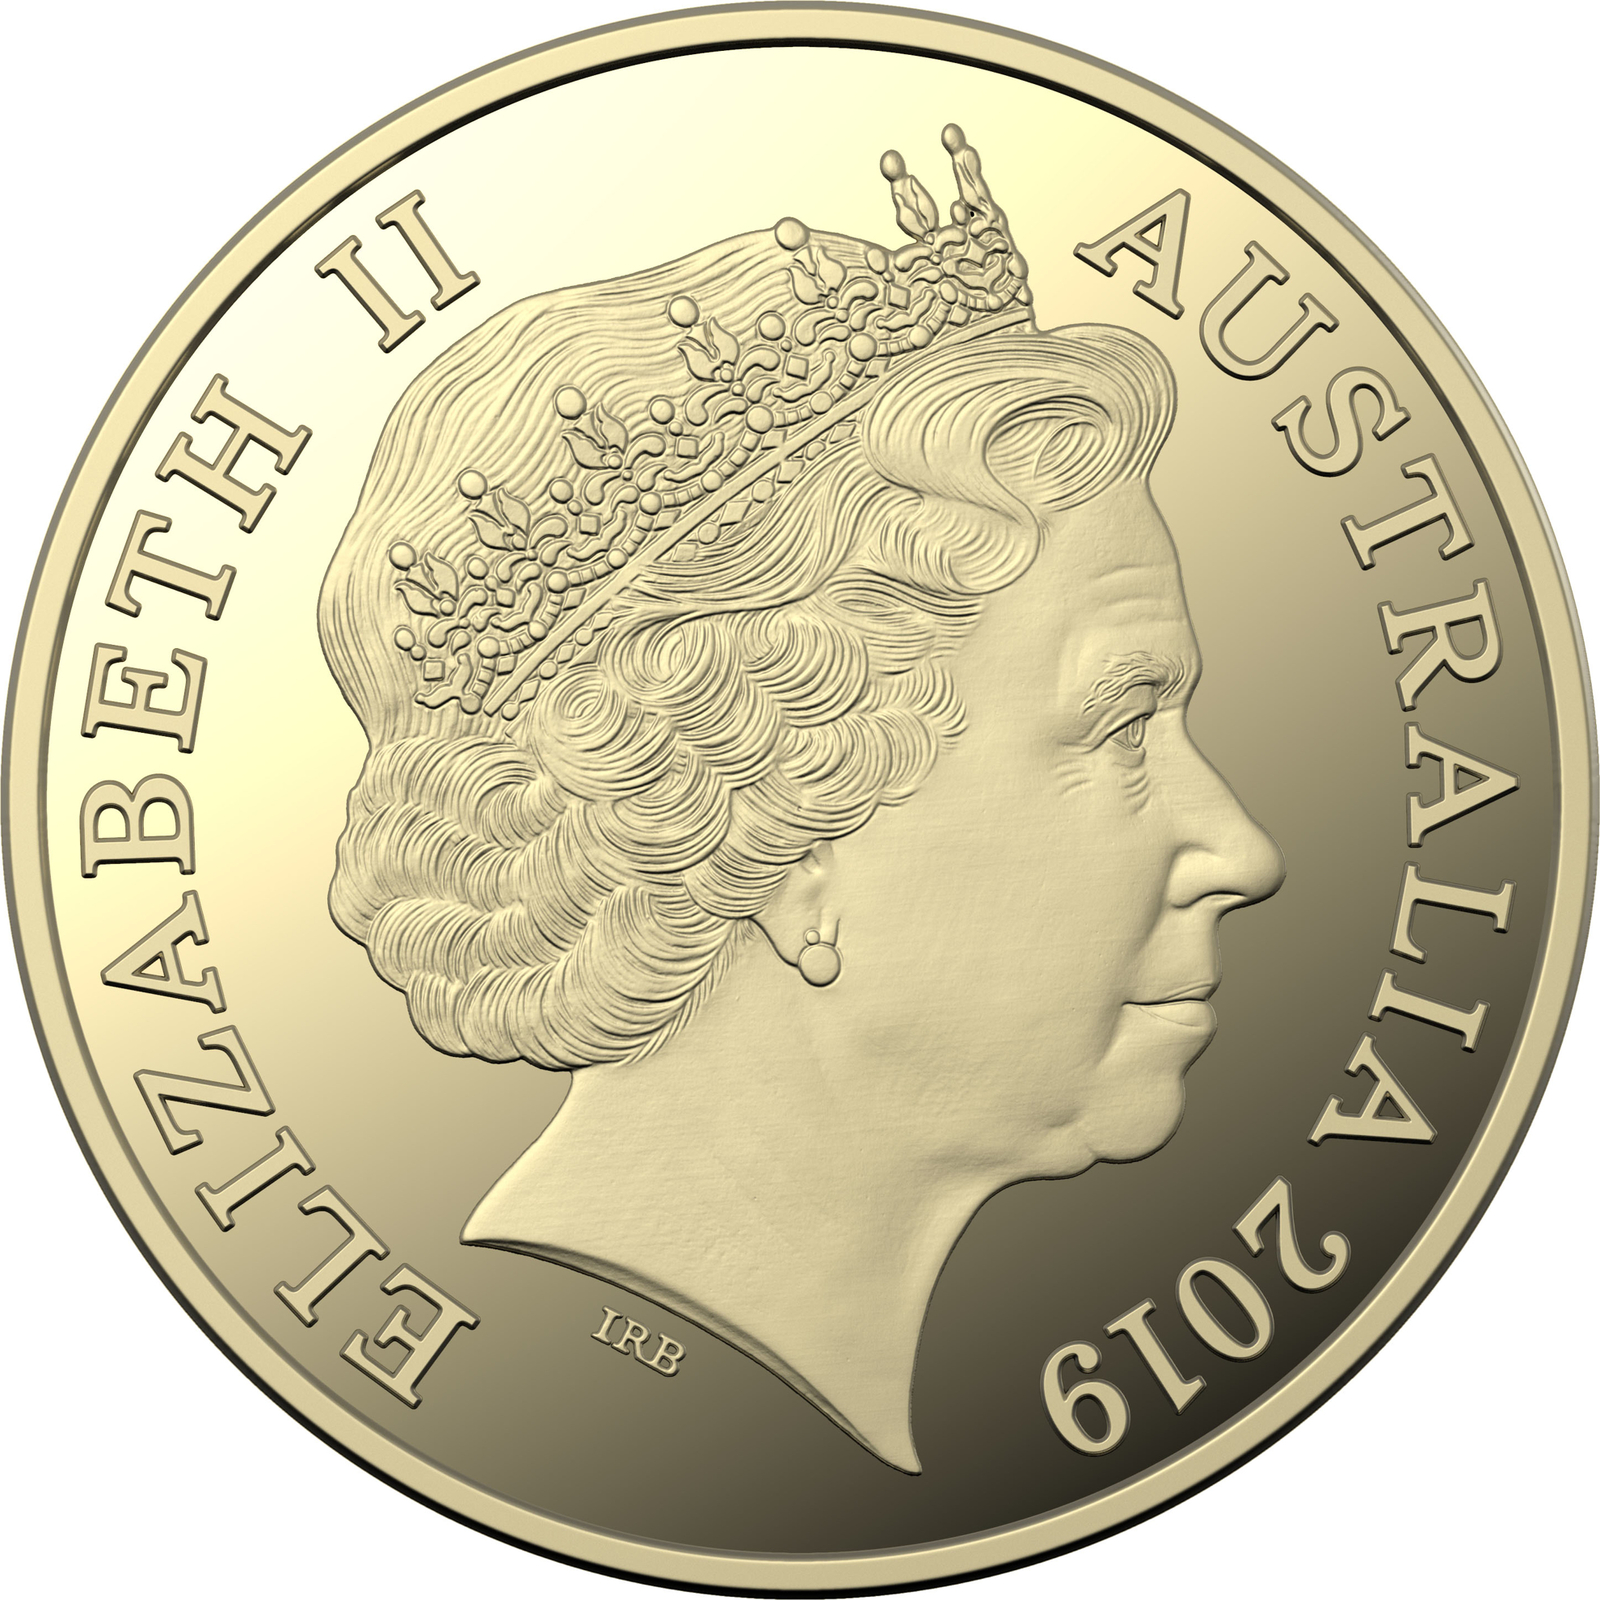 2019 $1 "W" Great Australian Coin Hunt